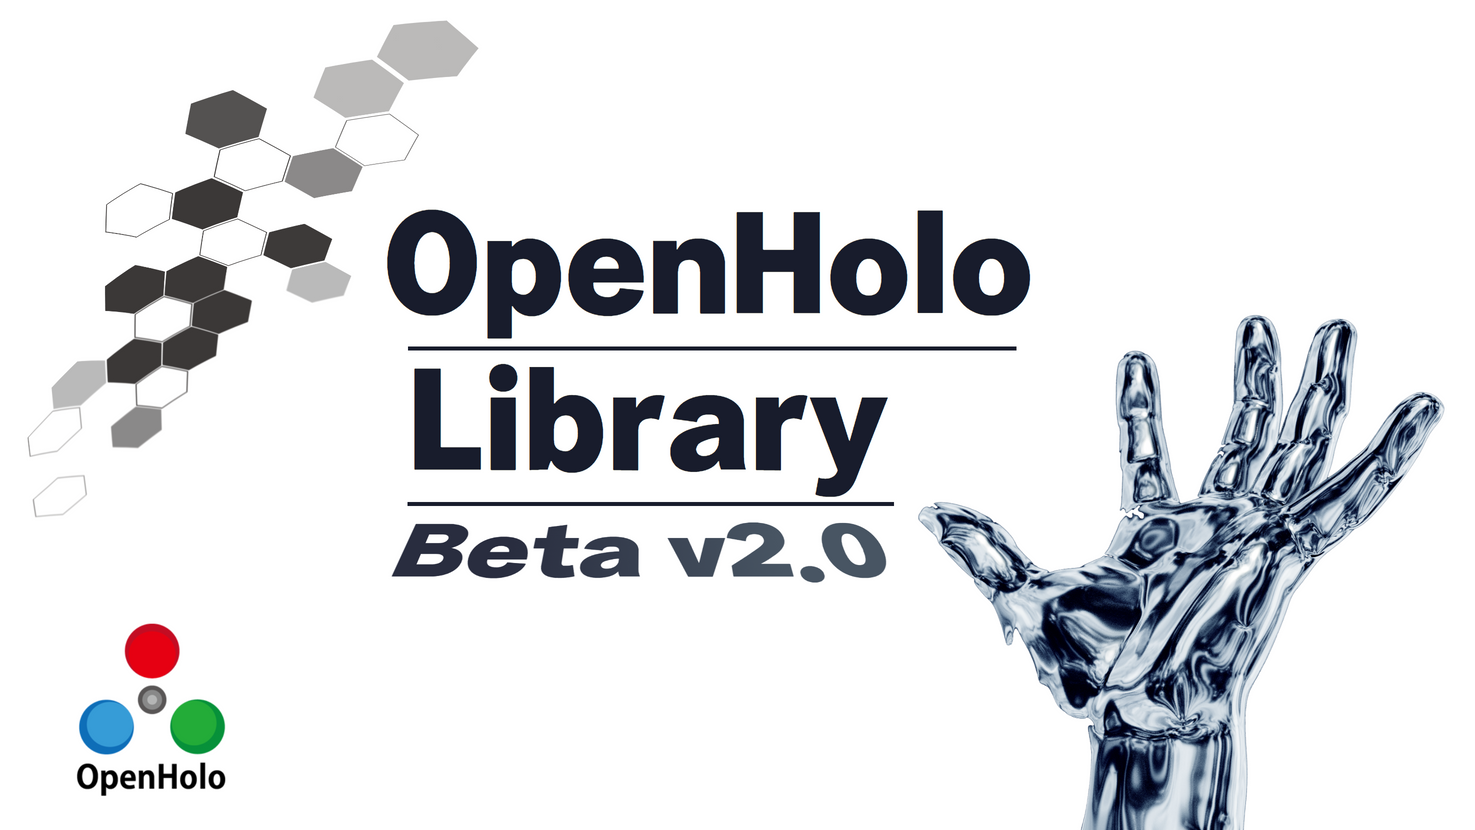 OPENHOLO Library beta v2.0